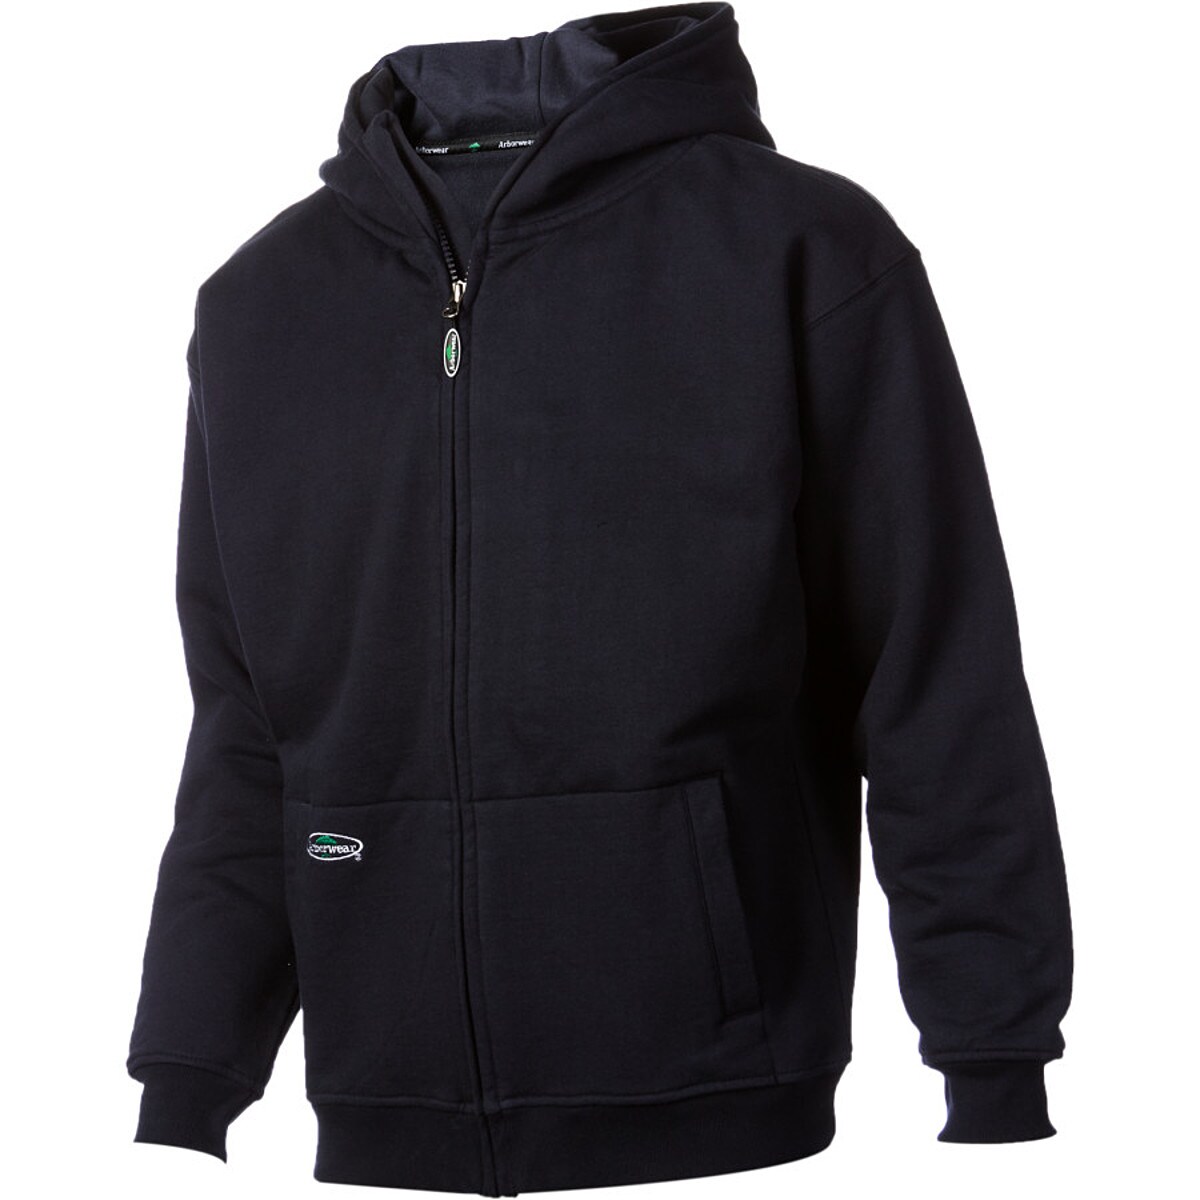 Arborwear Double Thick Full-Zip Hooded Sweatshirt - Men's | eBay